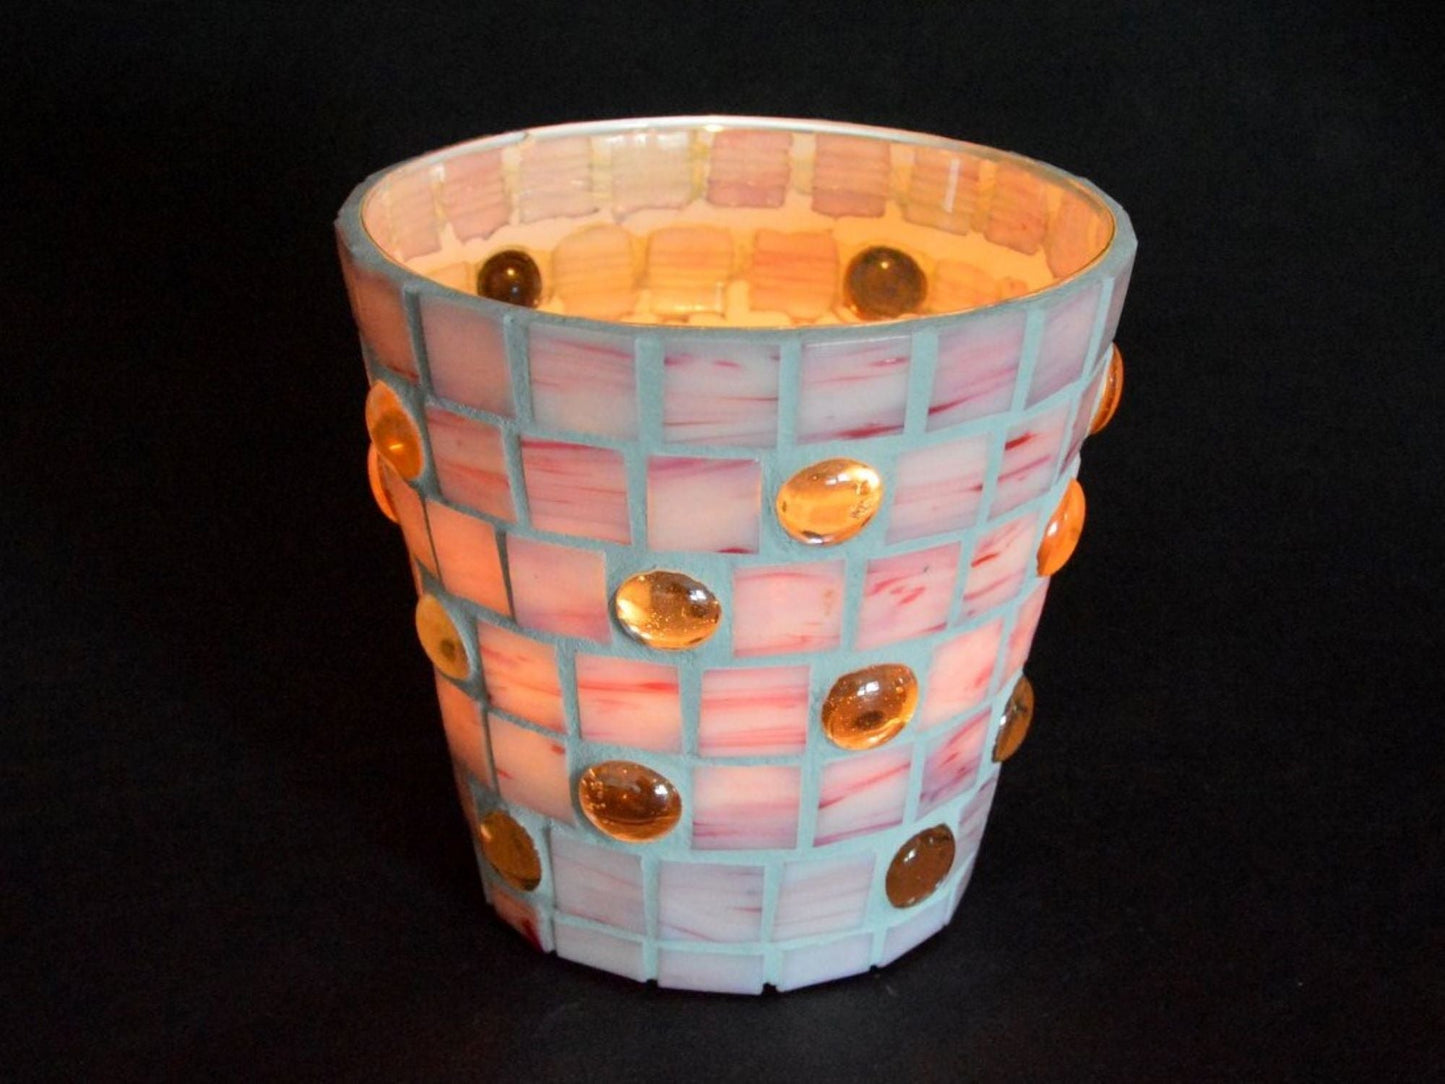 Mosaik Windlicht rosa 14 cm hoch Kerzenhalter Teelichthalter Übertopf Utensilo - Mosaikkasten aus alt mach neu dekoidee